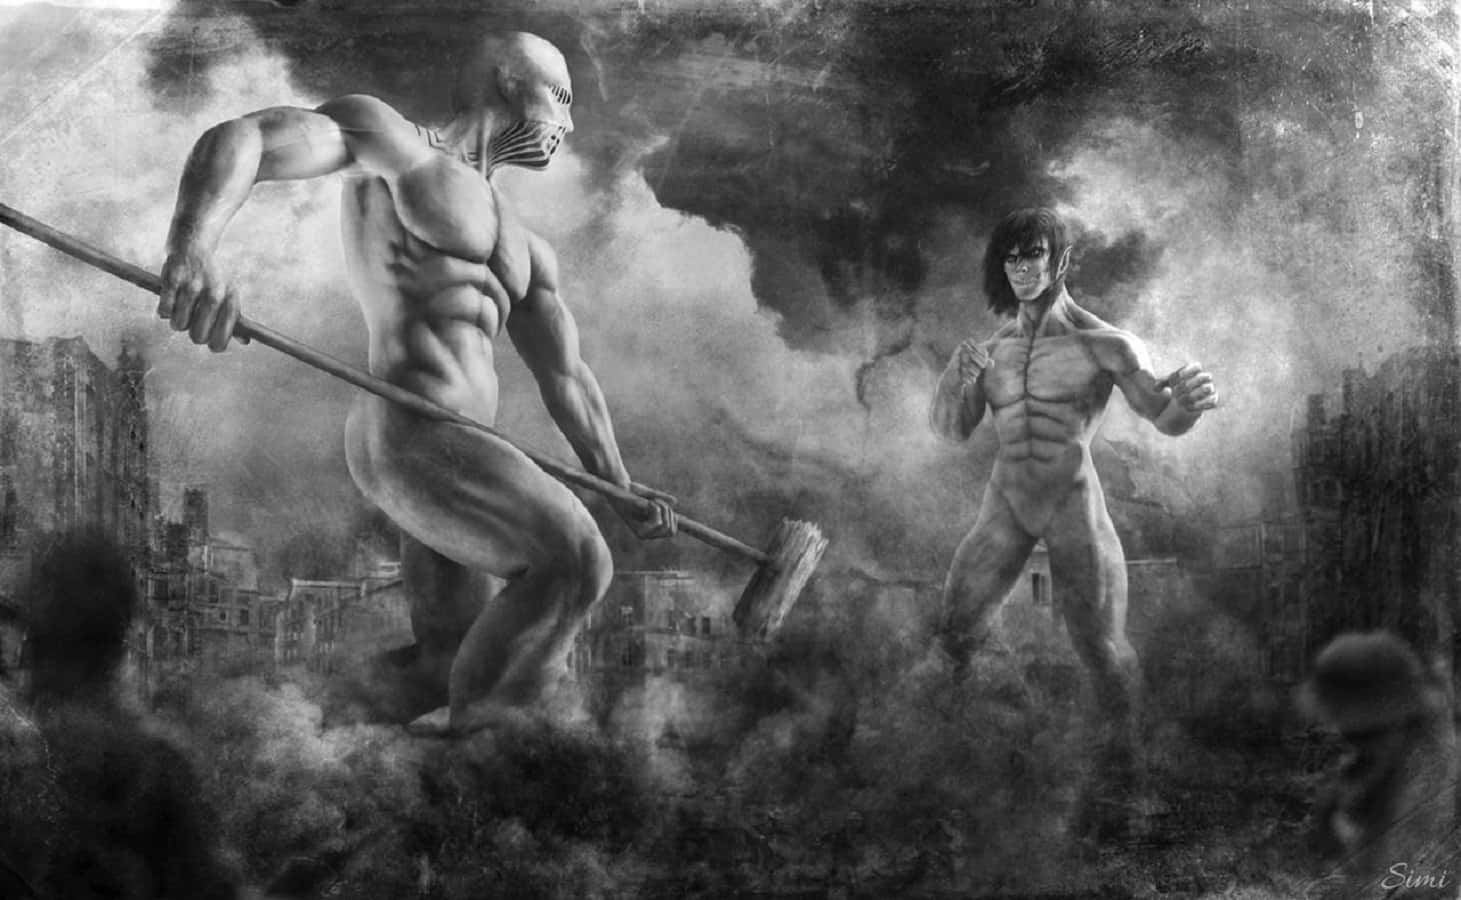 An epic clash between War Hammer and Titan Wallpaper